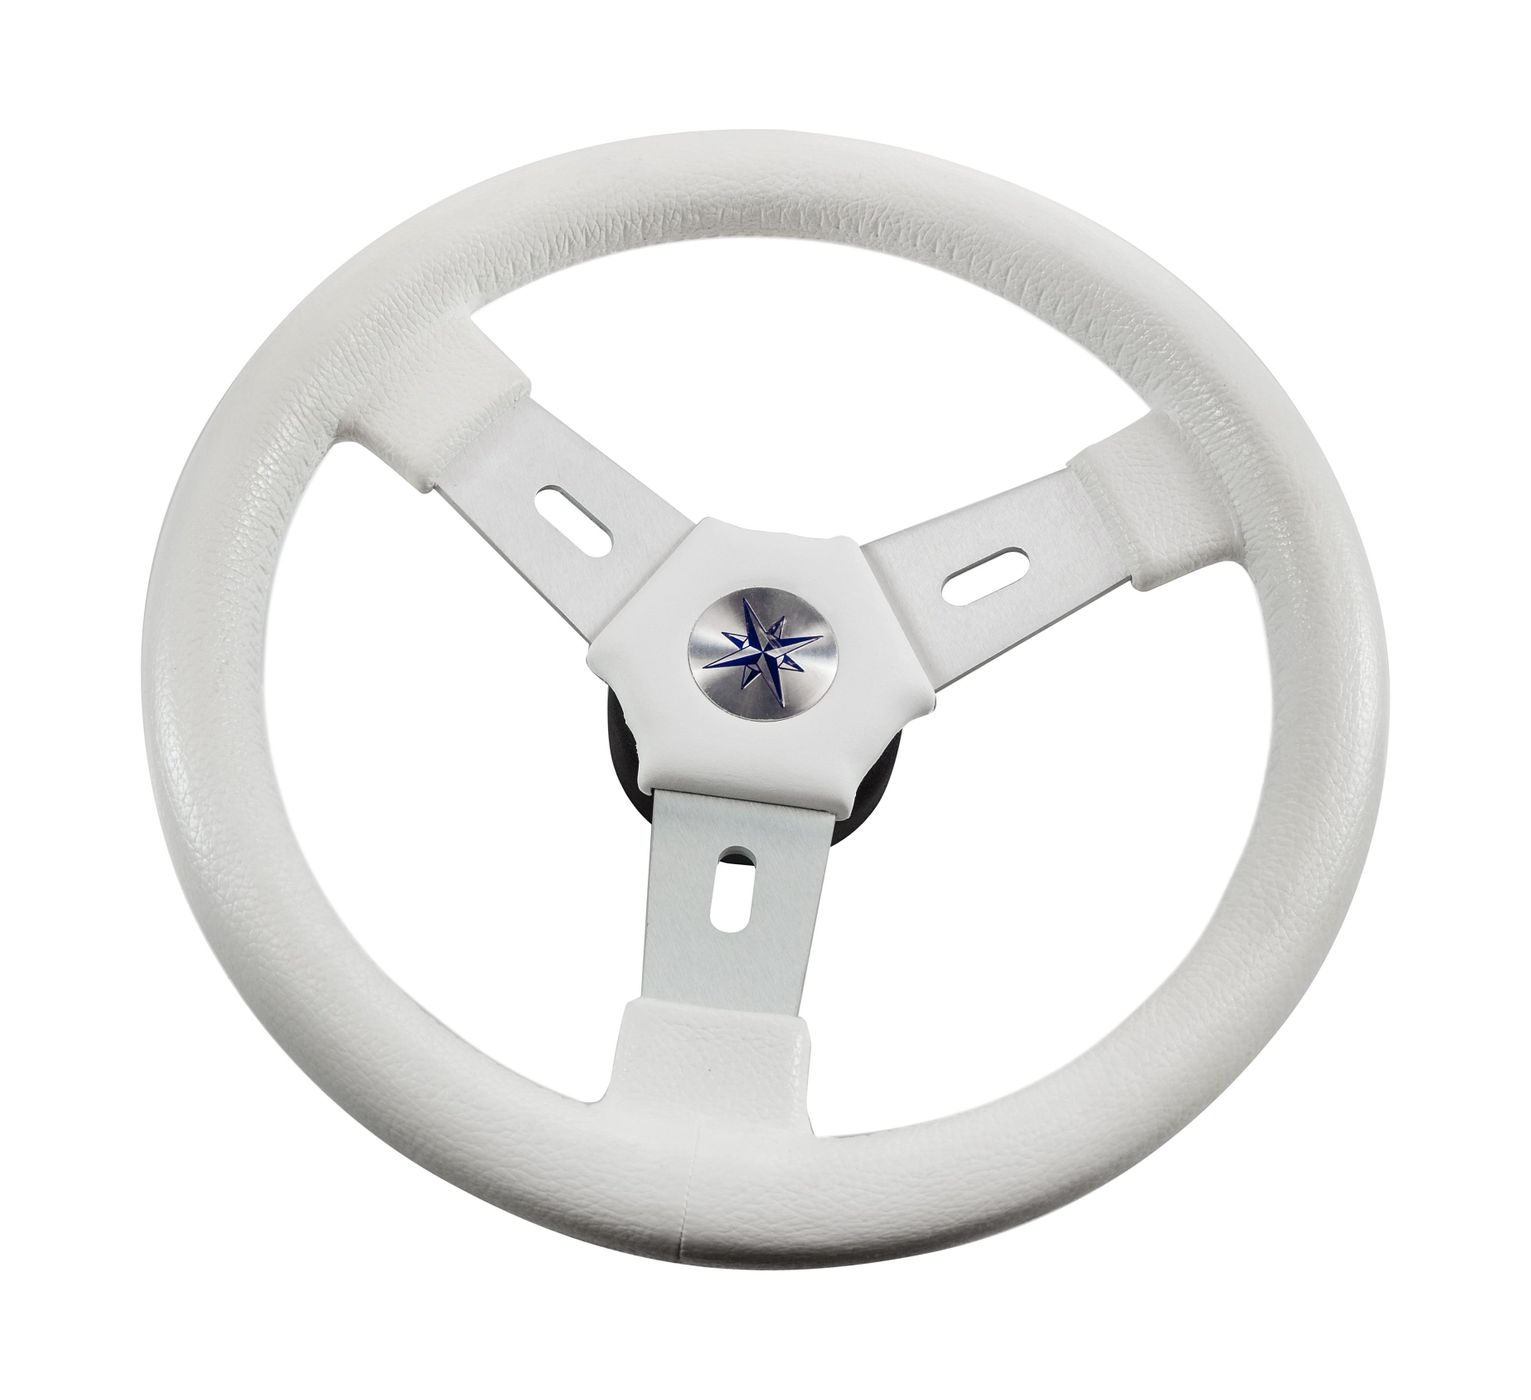 Рулевое колесо ELBA обод белый, спицы серебрянные д.320 мм VN70311-08 рулевое колесо leader tanegum белый обод серебряные спицы д 330 мм vn7330 08